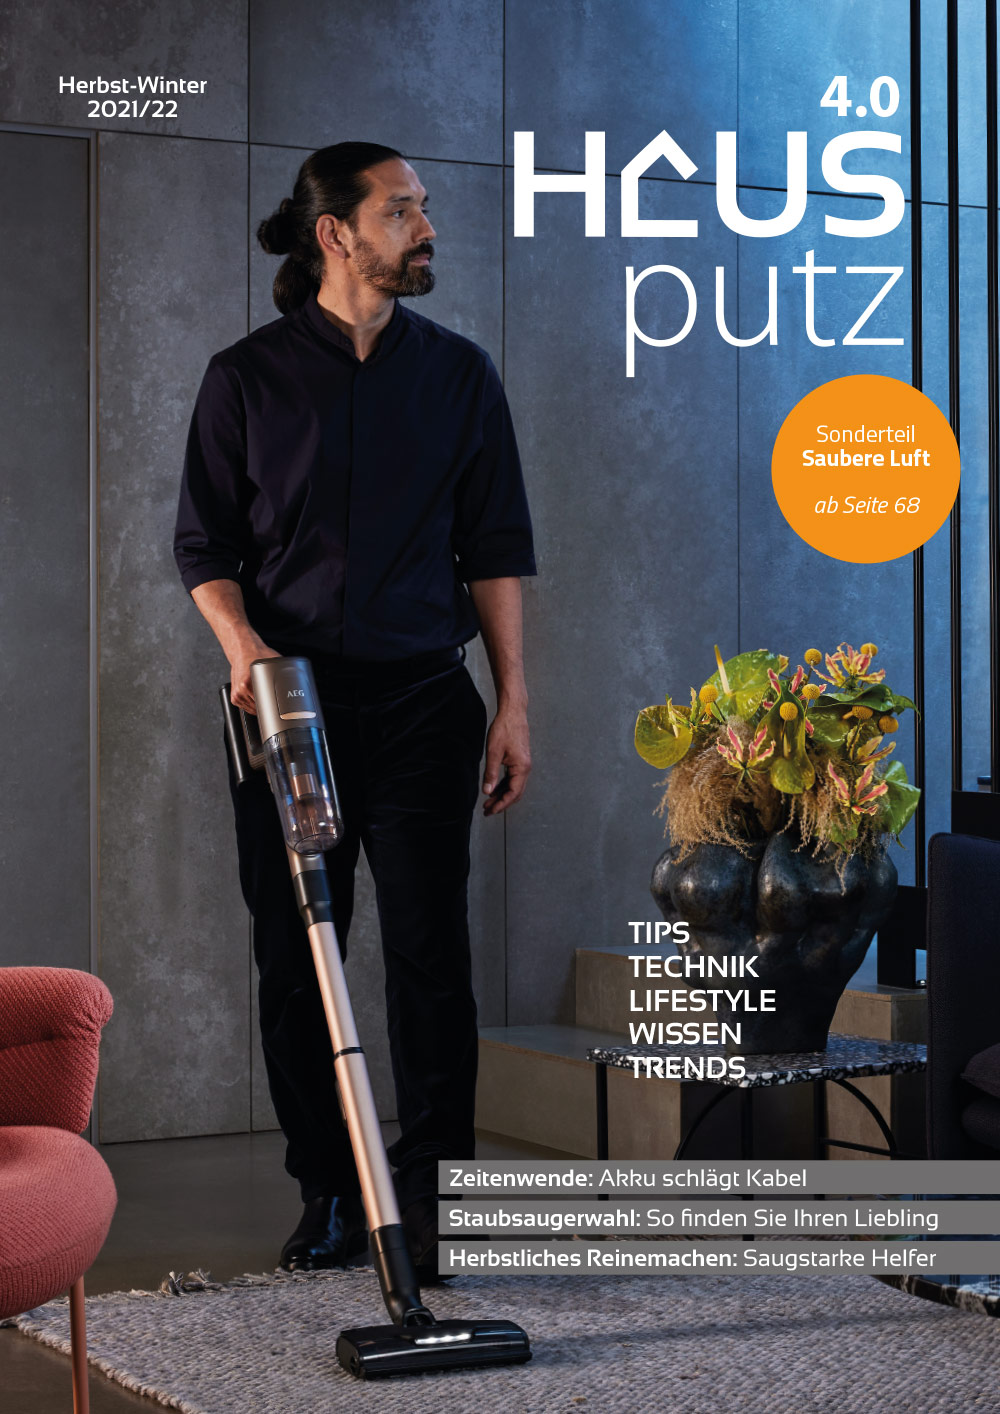 eMagazin Hausputz 4.0 Ausgabe 2021 Titelseite